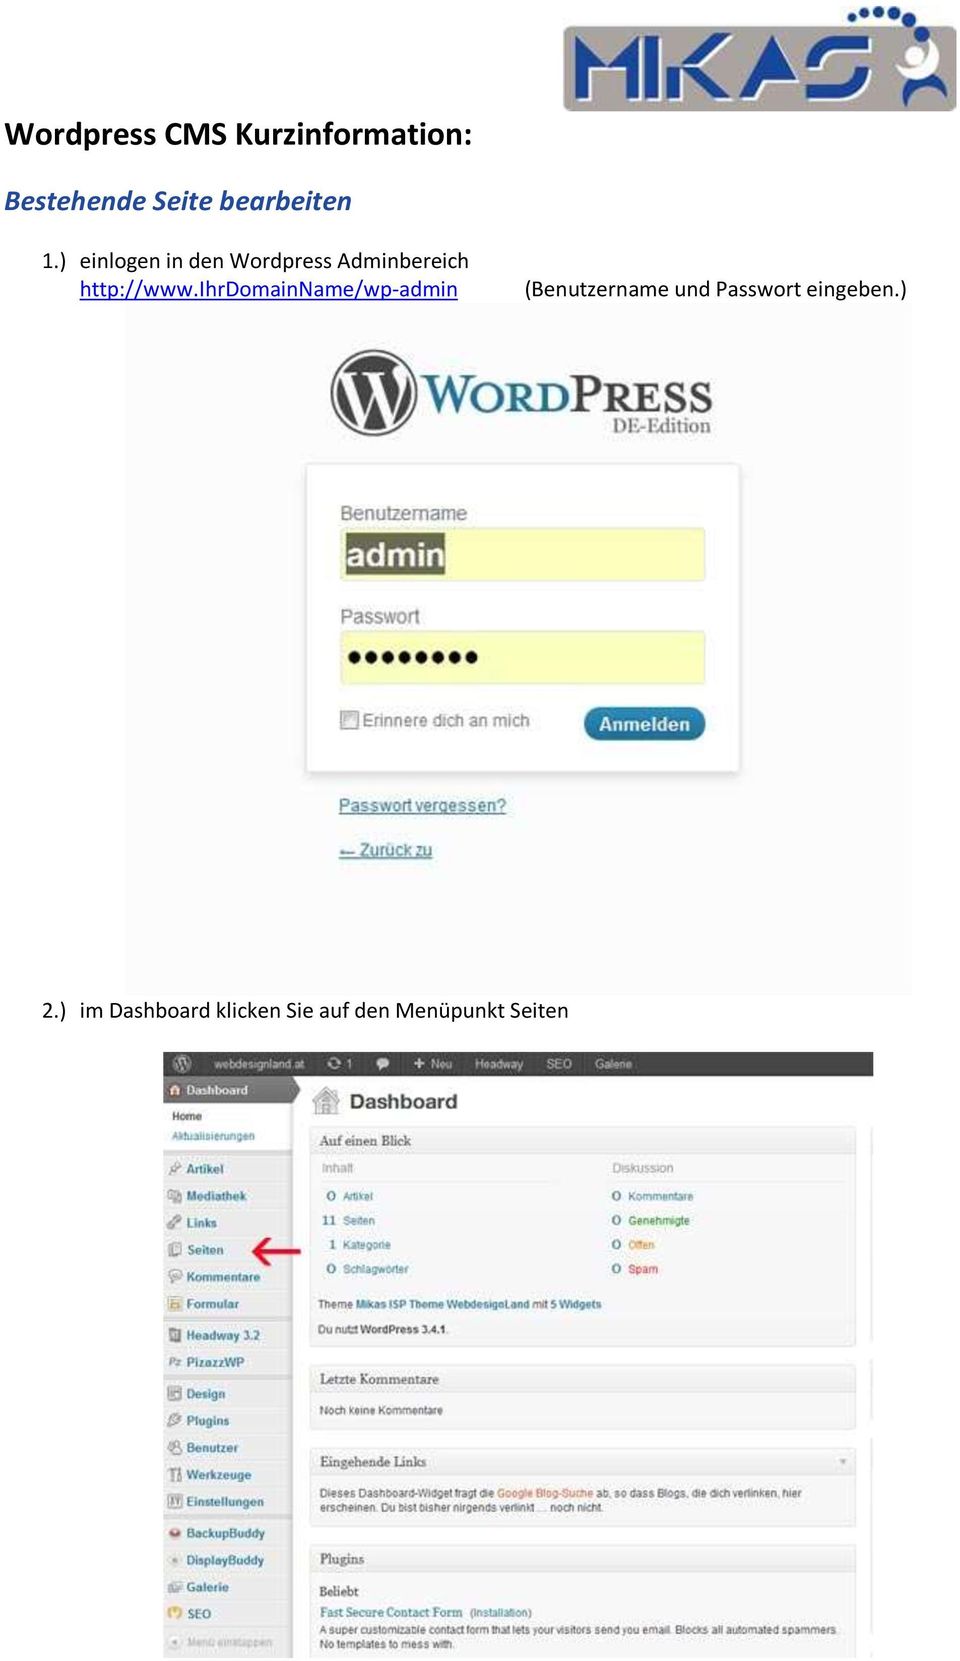 ) einlogen in den Wordpress Adminbereich http://www.